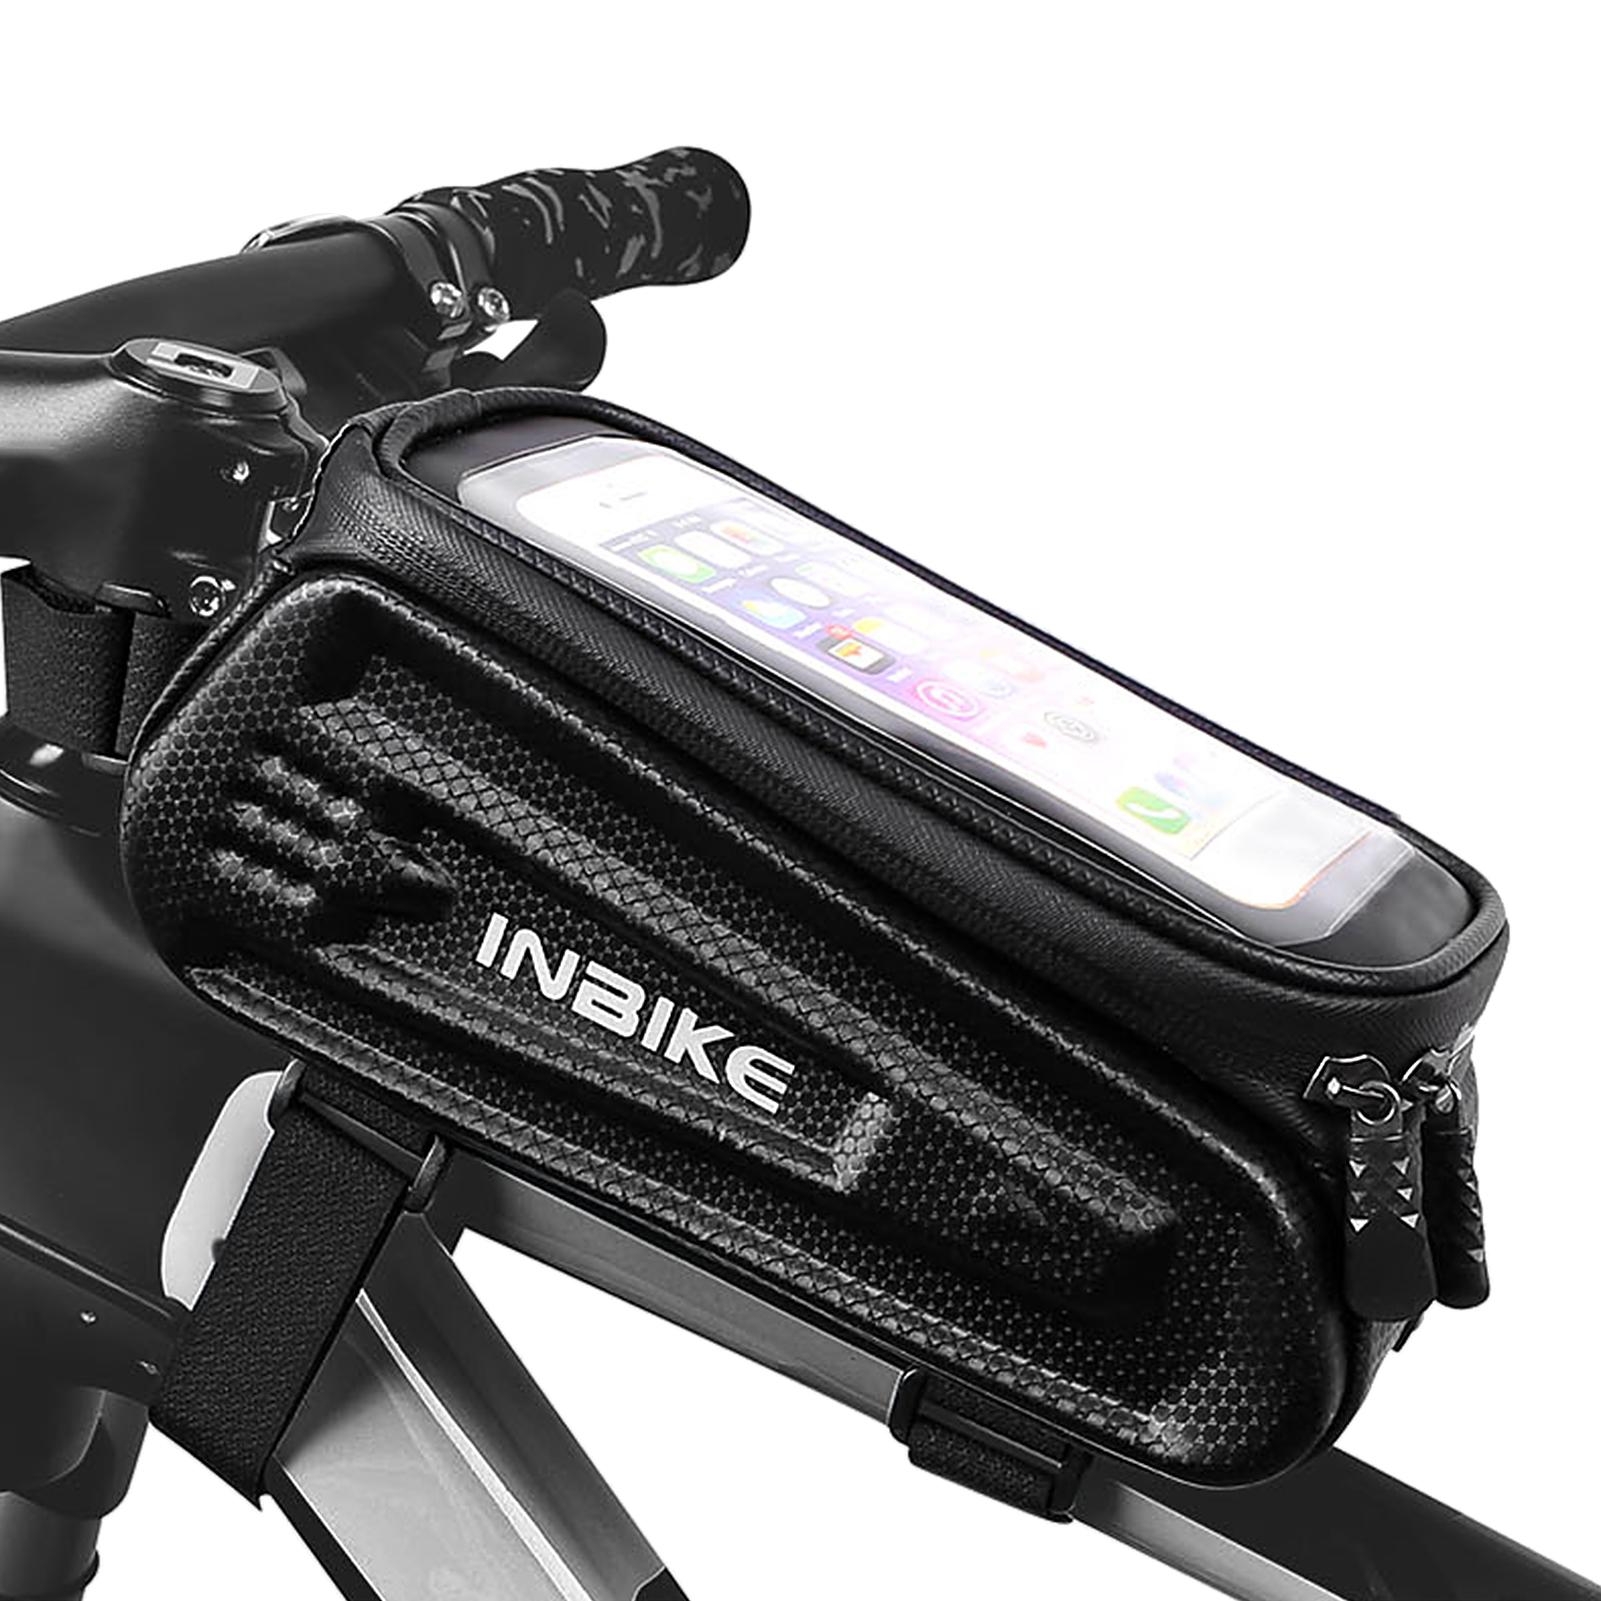 Túi xe đạp bằng ằng vật liệu EVA cứng, bền,chống ấn và chống rơi, với thiết kế màn hình cảm ứng TPU HD